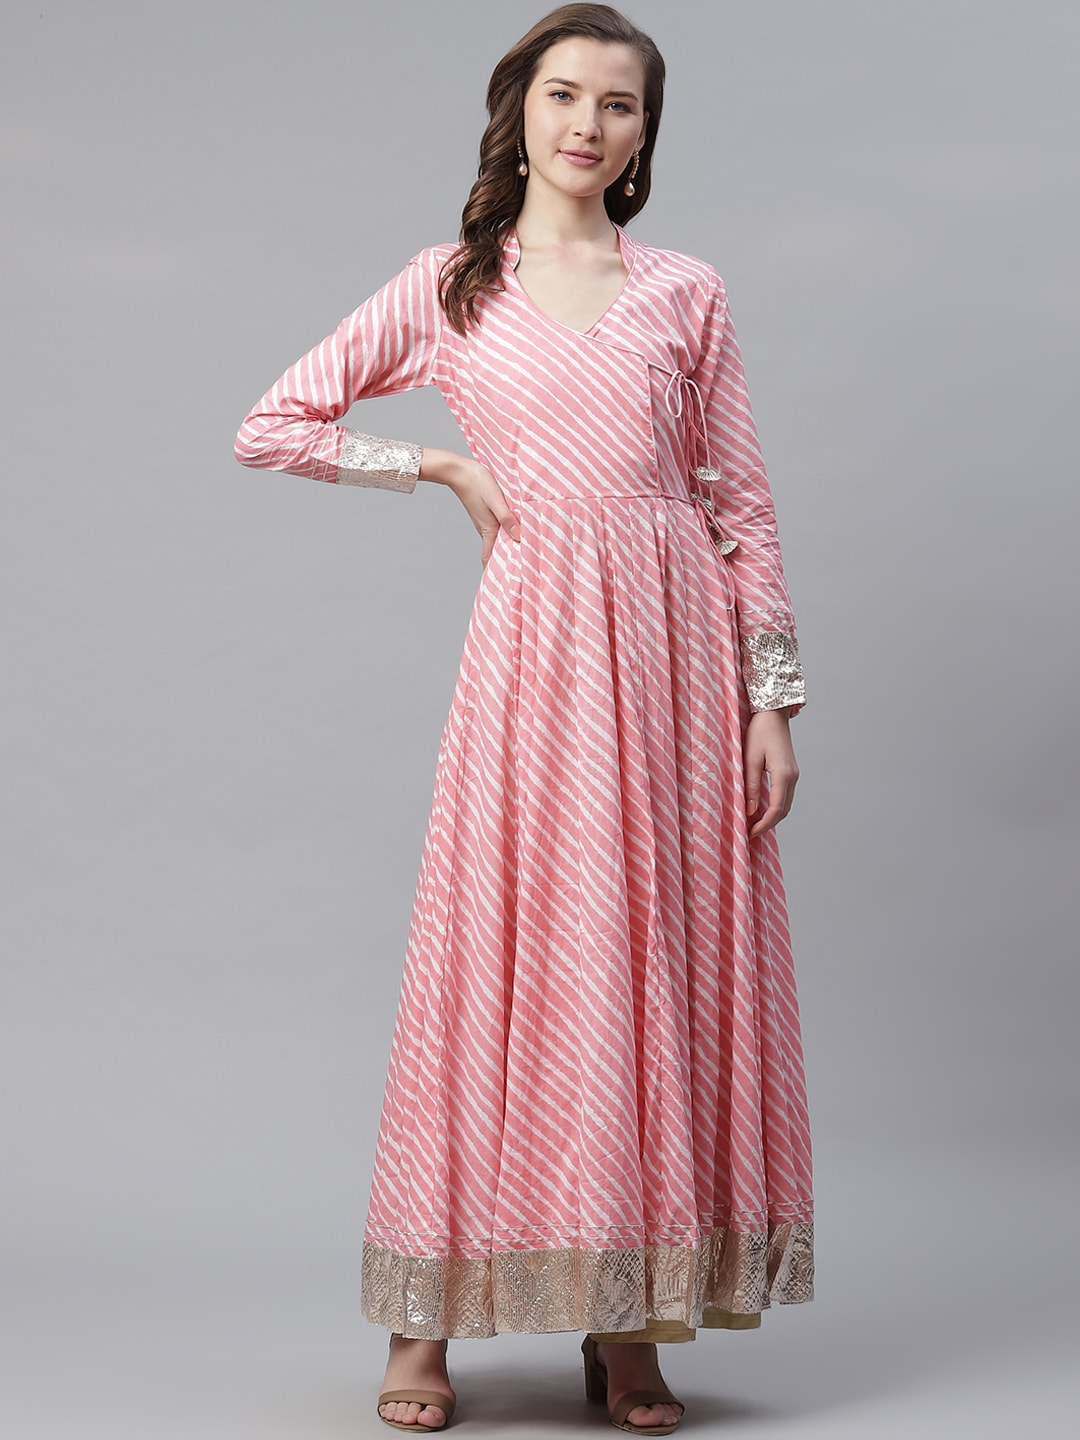 women designer dress Pink,Black in Jaipur at best price by Modern Kurti -  Justdial